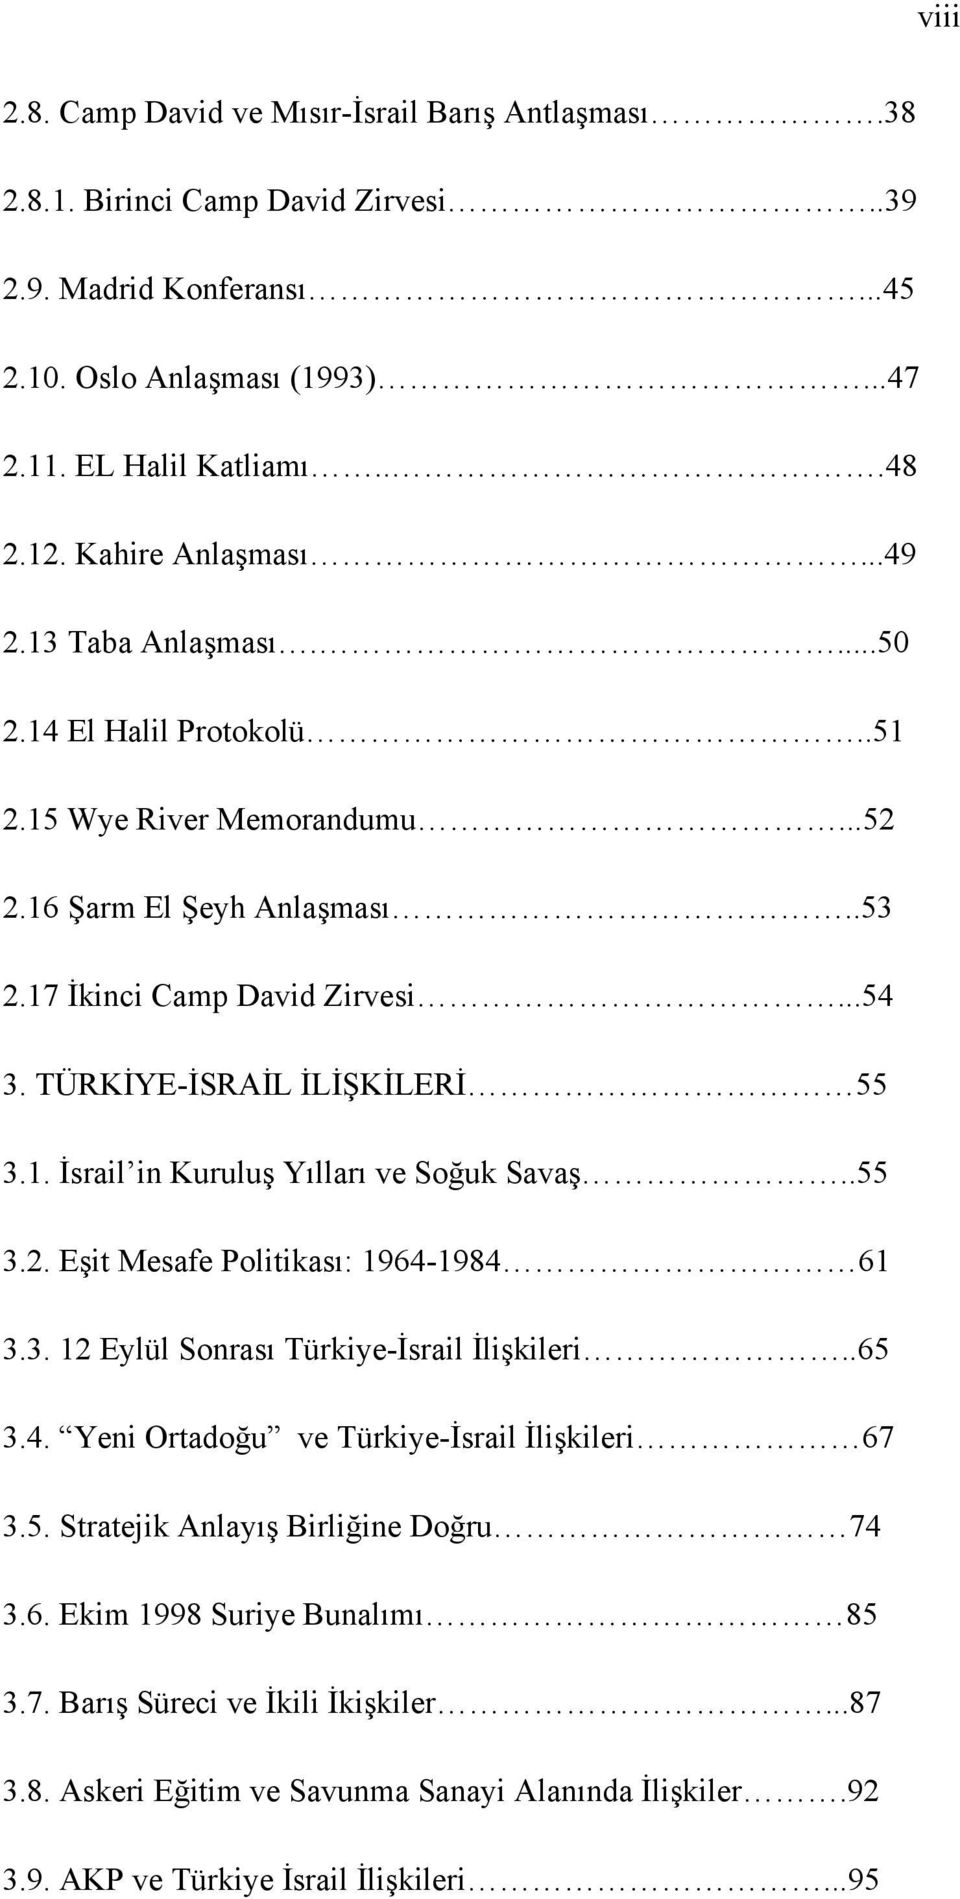 TÜRKİYE-İSRAİL İLİŞKİLERİ 55 3.1. İsrail in Kuruluş Yılları ve Soğuk Savaş..55 3.2. Eşit Mesafe Politikası: 1964-1984 61 3.3. 12 Eylül Sonrası Türkiye-İsrail İlişkileri..65 3.4. Yeni Ortadoğu ve Türkiye-İsrail İlişkileri 67 3.